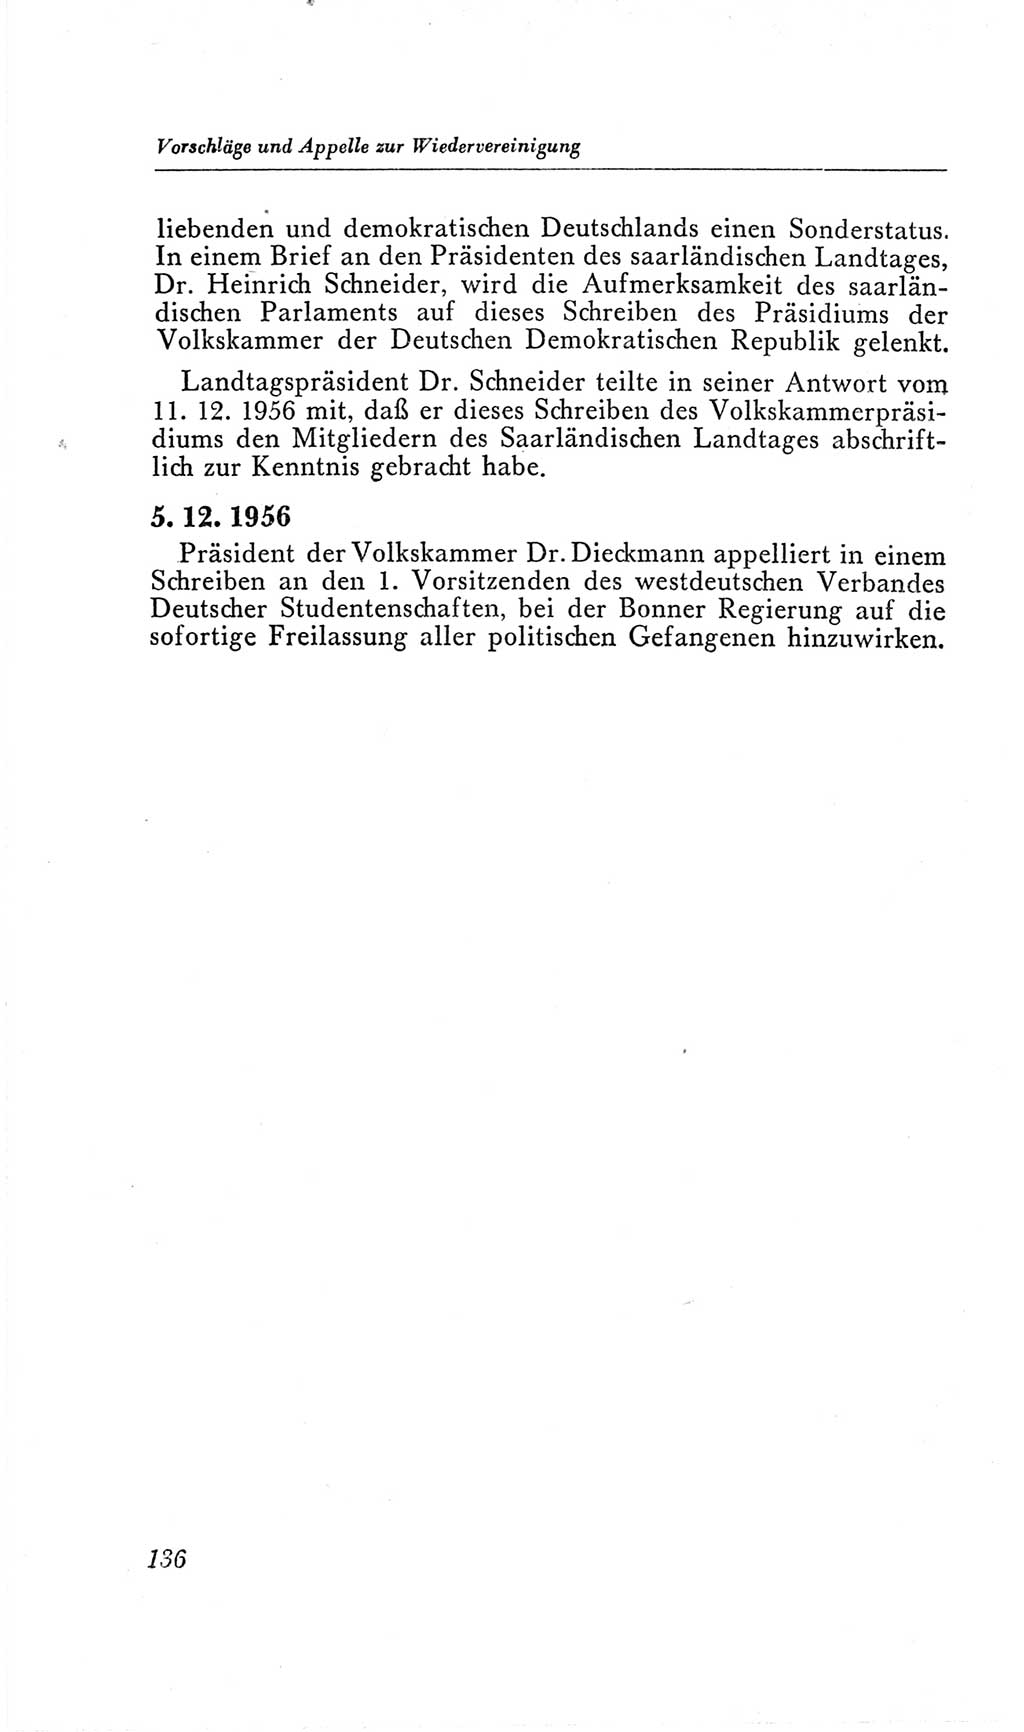 Handbuch der Volkskammer (VK) der Deutschen Demokratischen Republik (DDR), 2. Wahlperiode 1954-1958, Seite 136 (Hdb. VK. DDR, 2. WP. 1954-1958, S. 136)